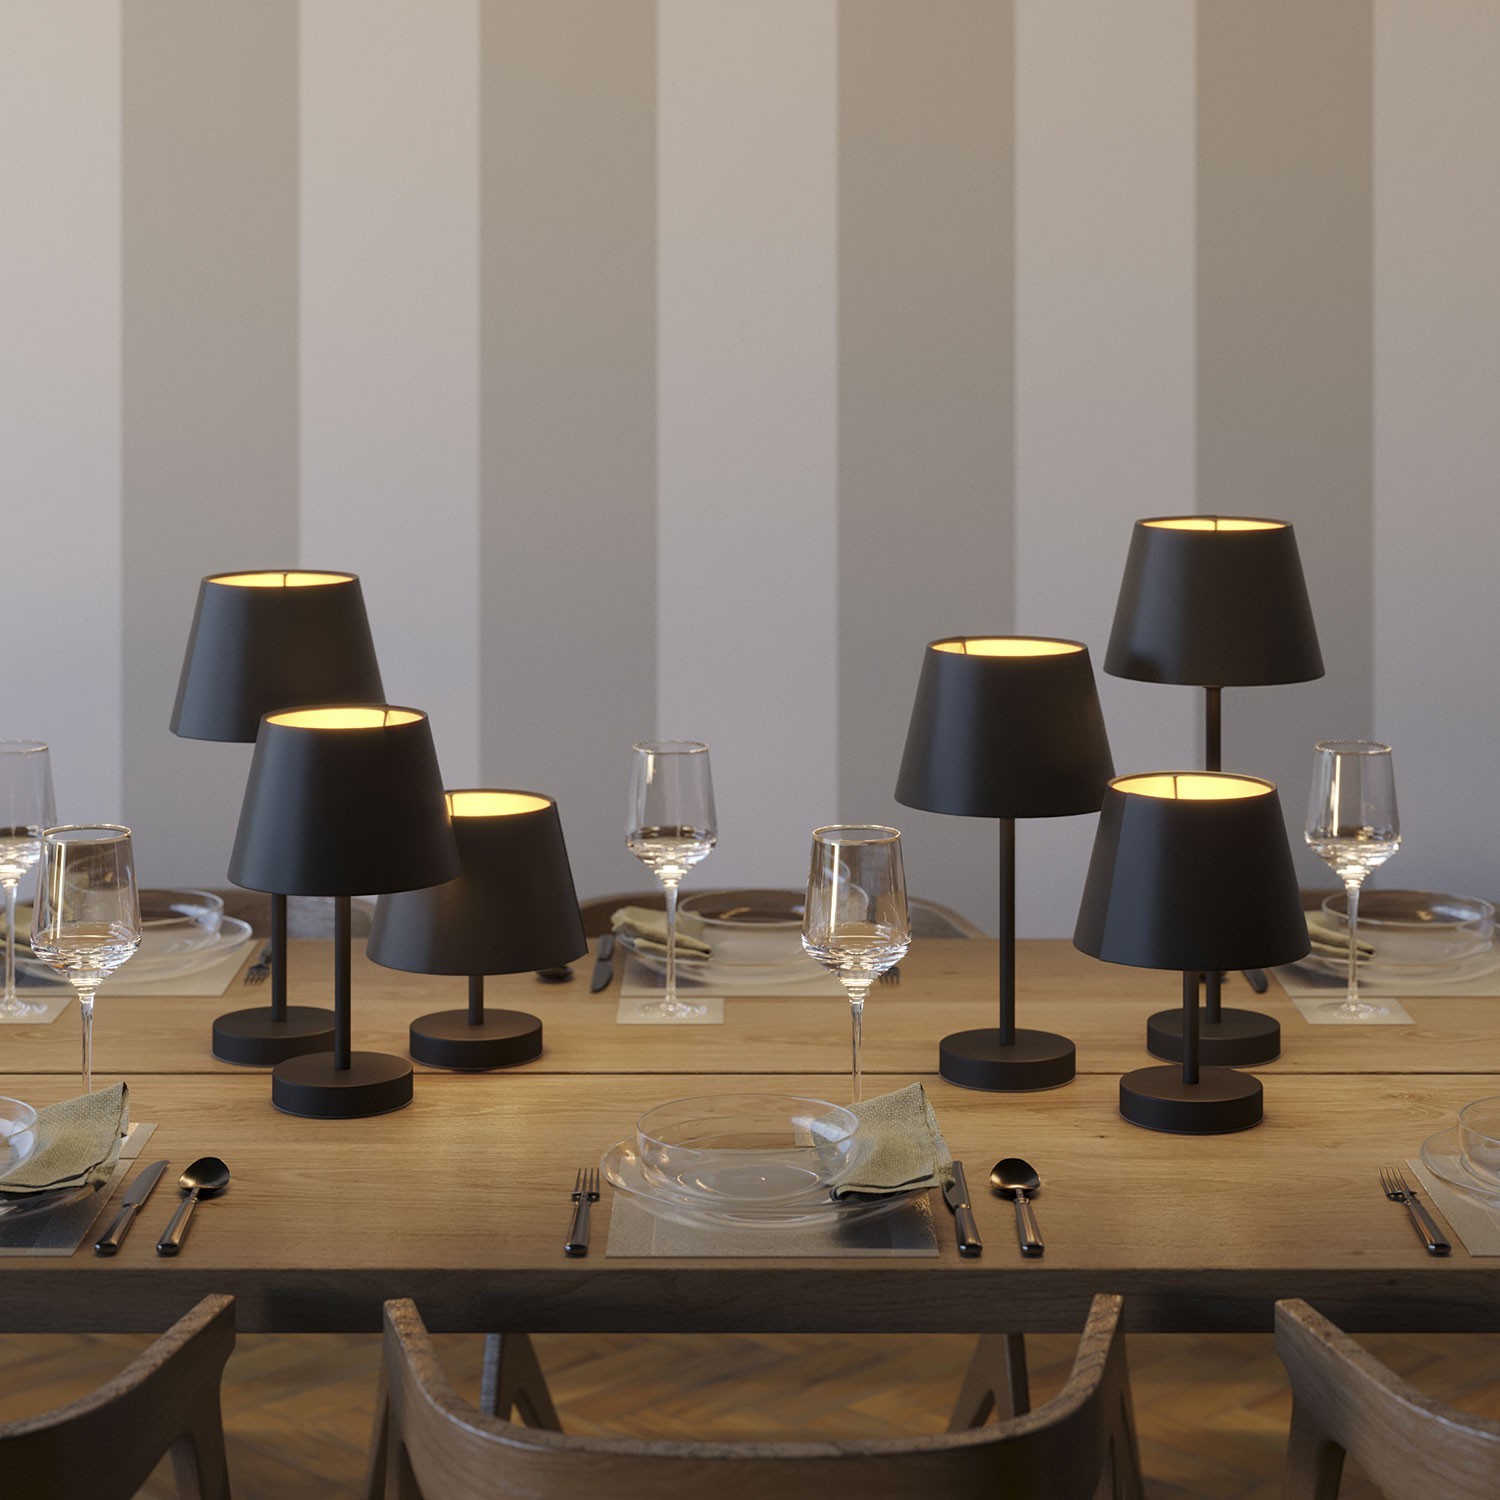 Impero lampeskærm i stof med E27 fitting til bord- eller væglampe - Fremstillet i Italien